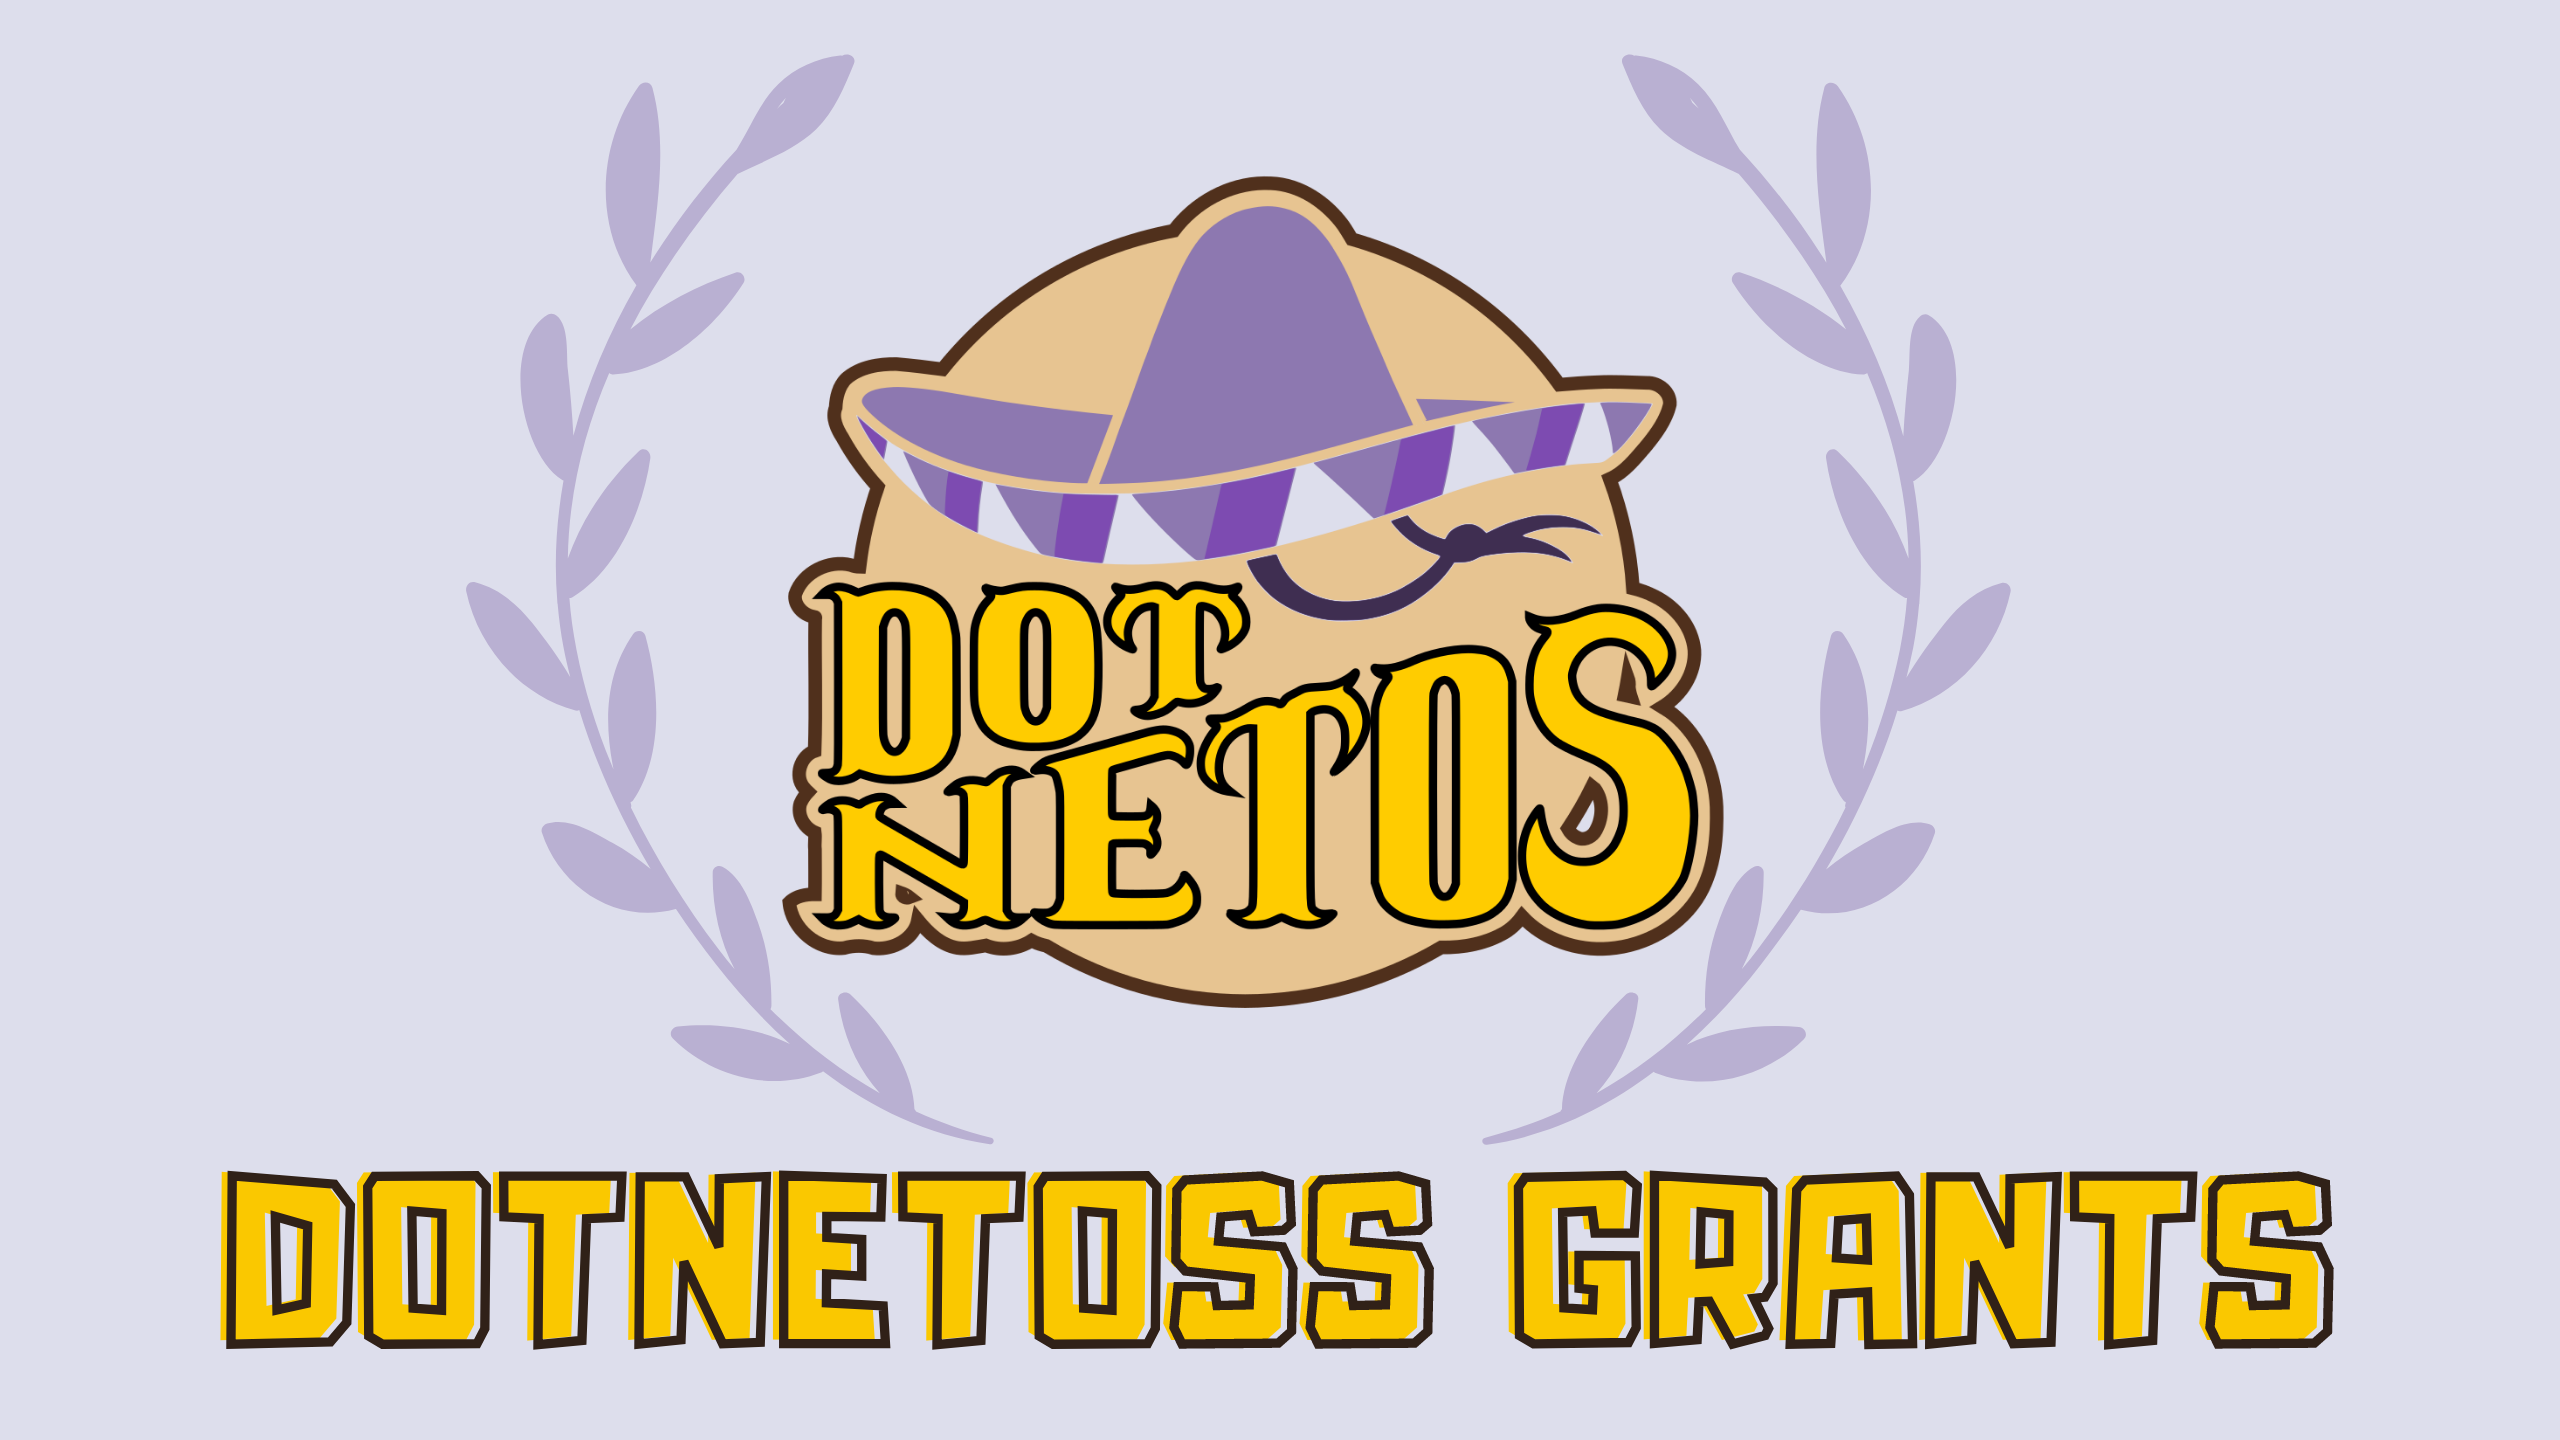 DotnetOSS Grants